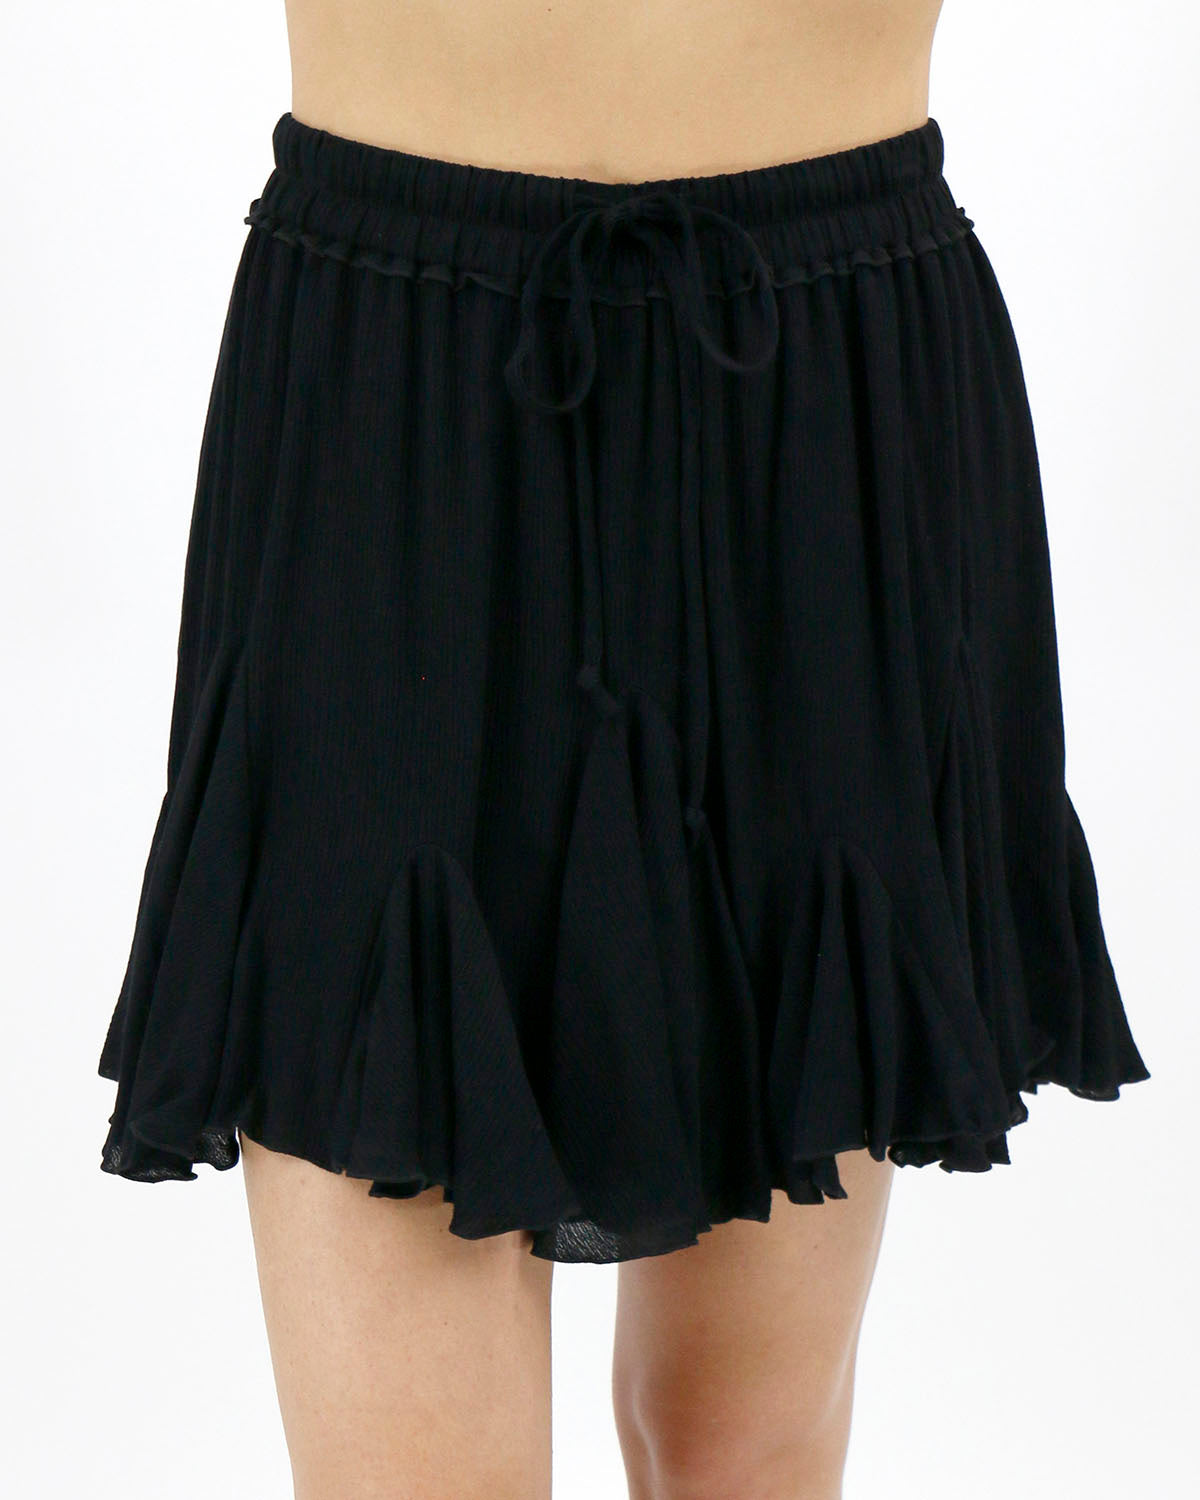 stock shot of black flutter pull on skirt drawstring